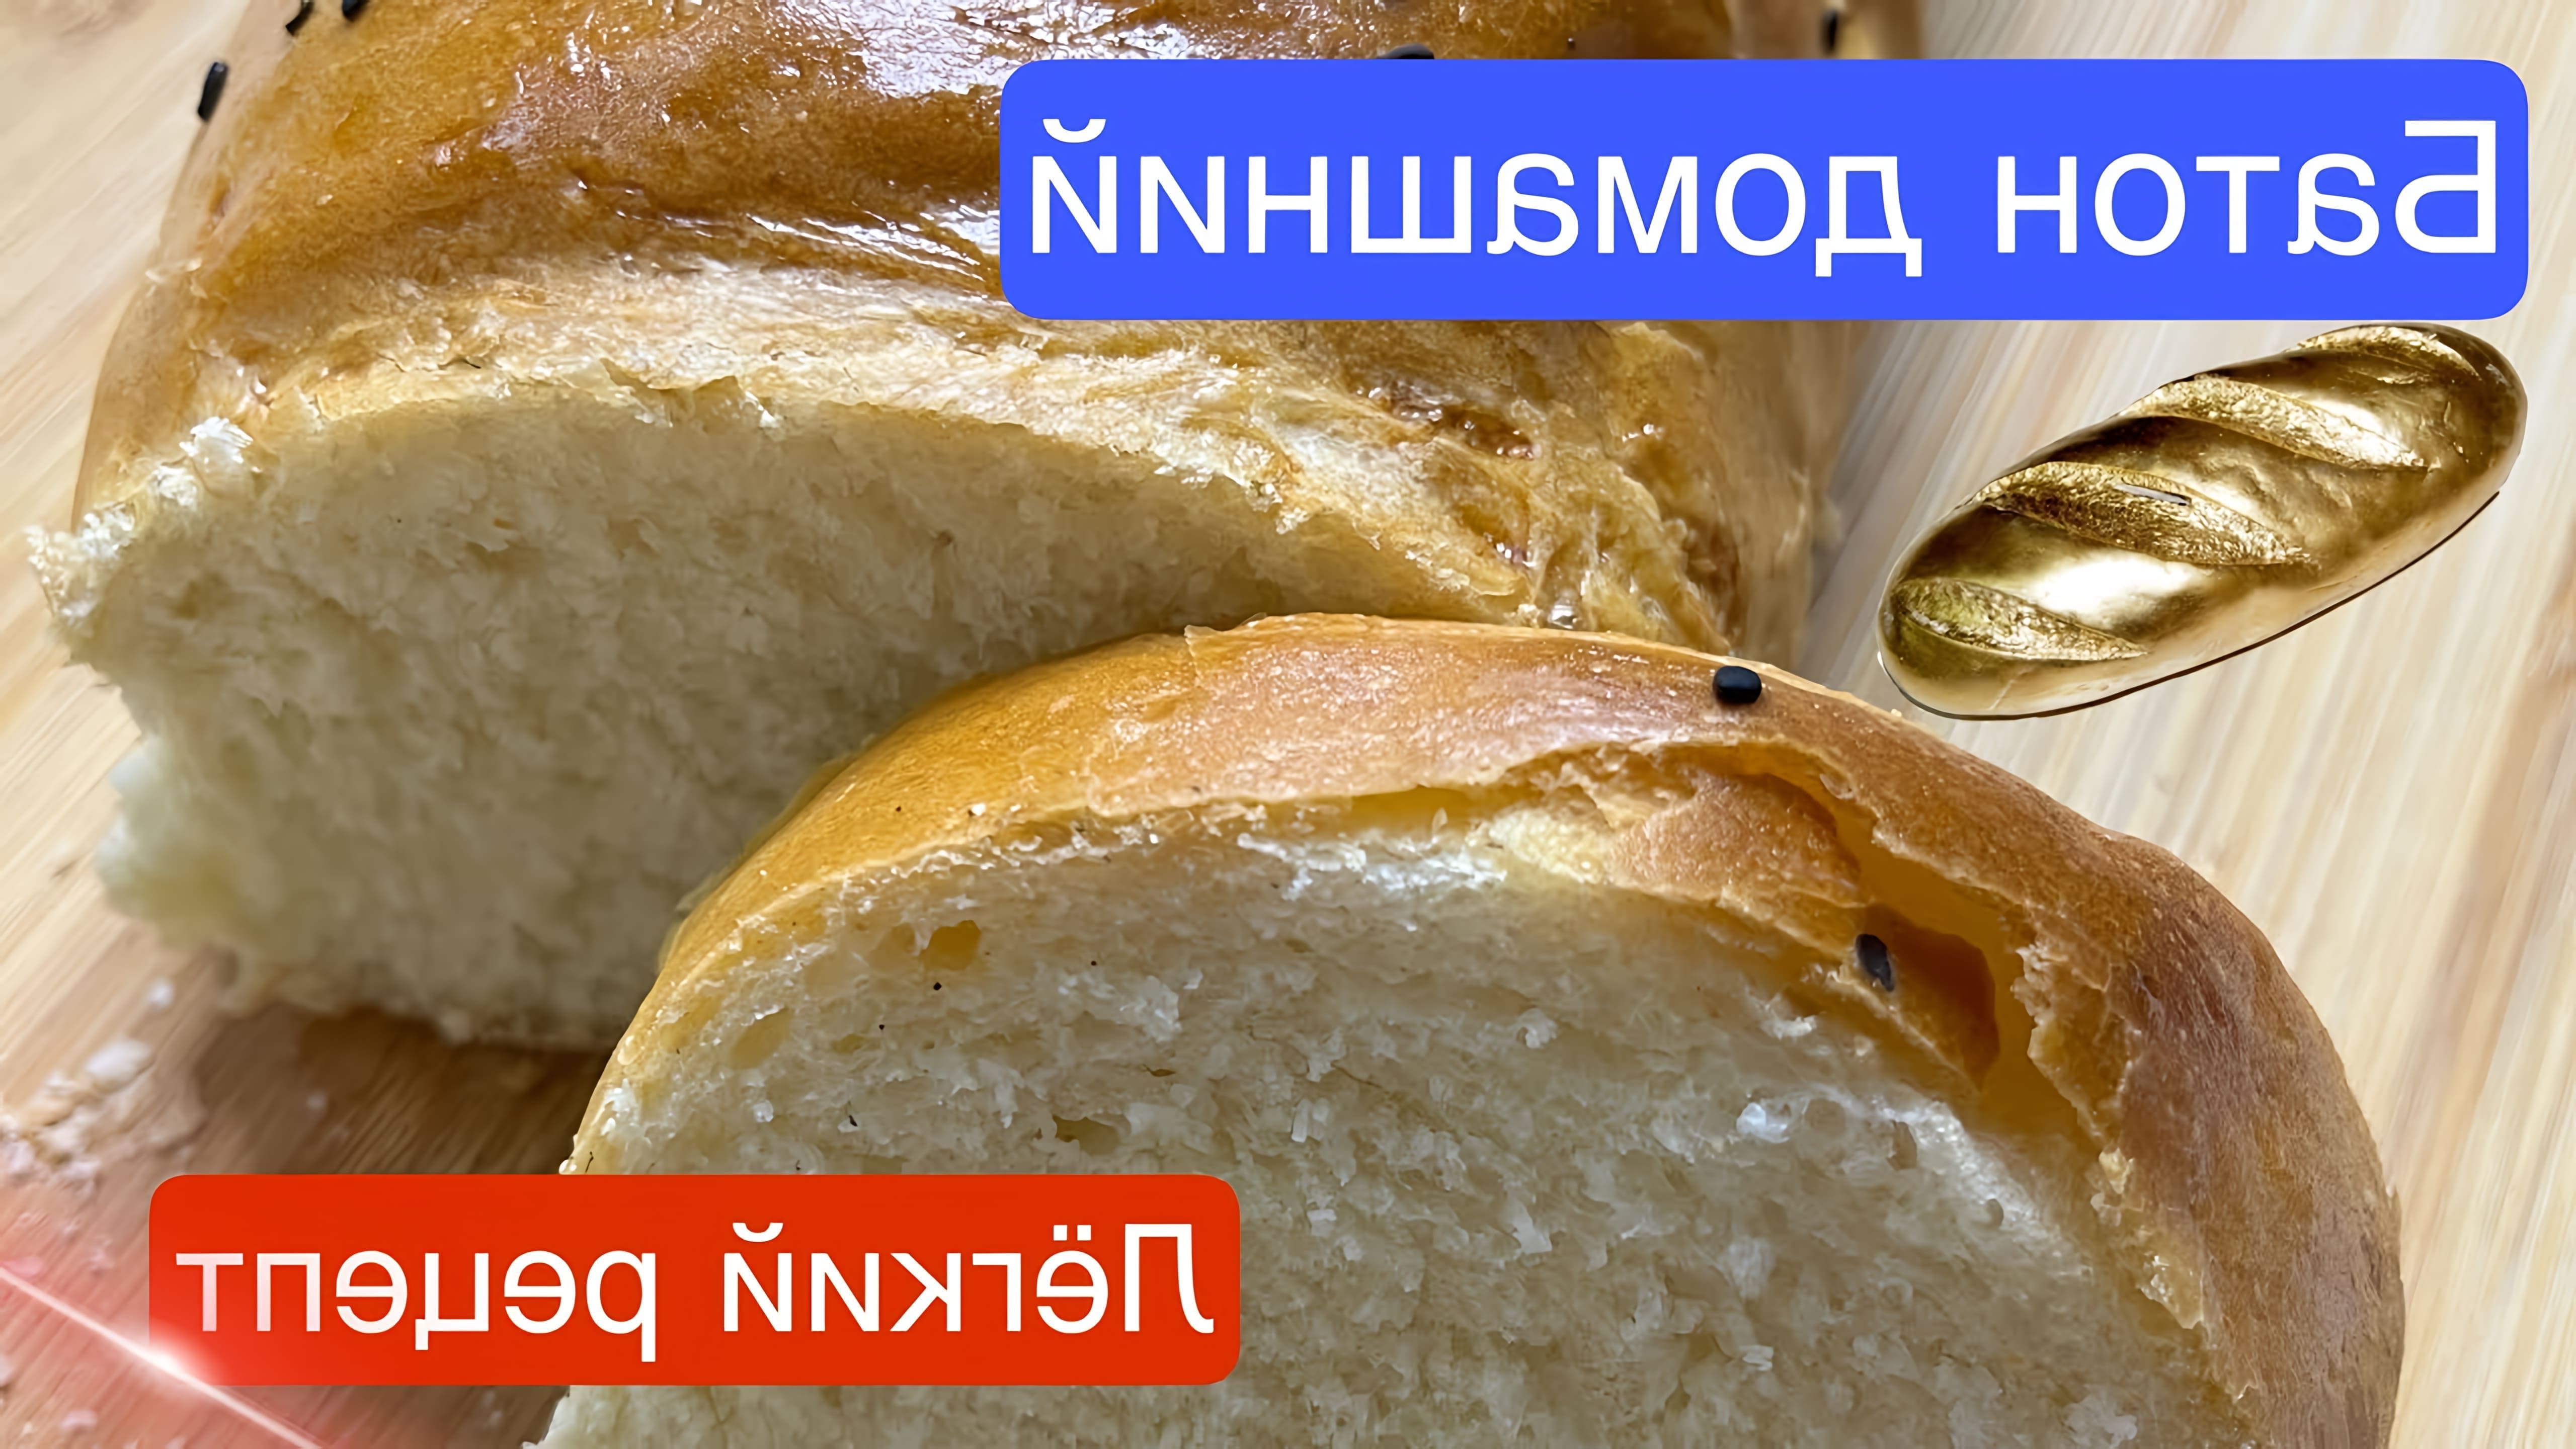 В этом видео-ролике показан простой и быстрый рецепт приготовления домашнего хлеба или батона в духовке